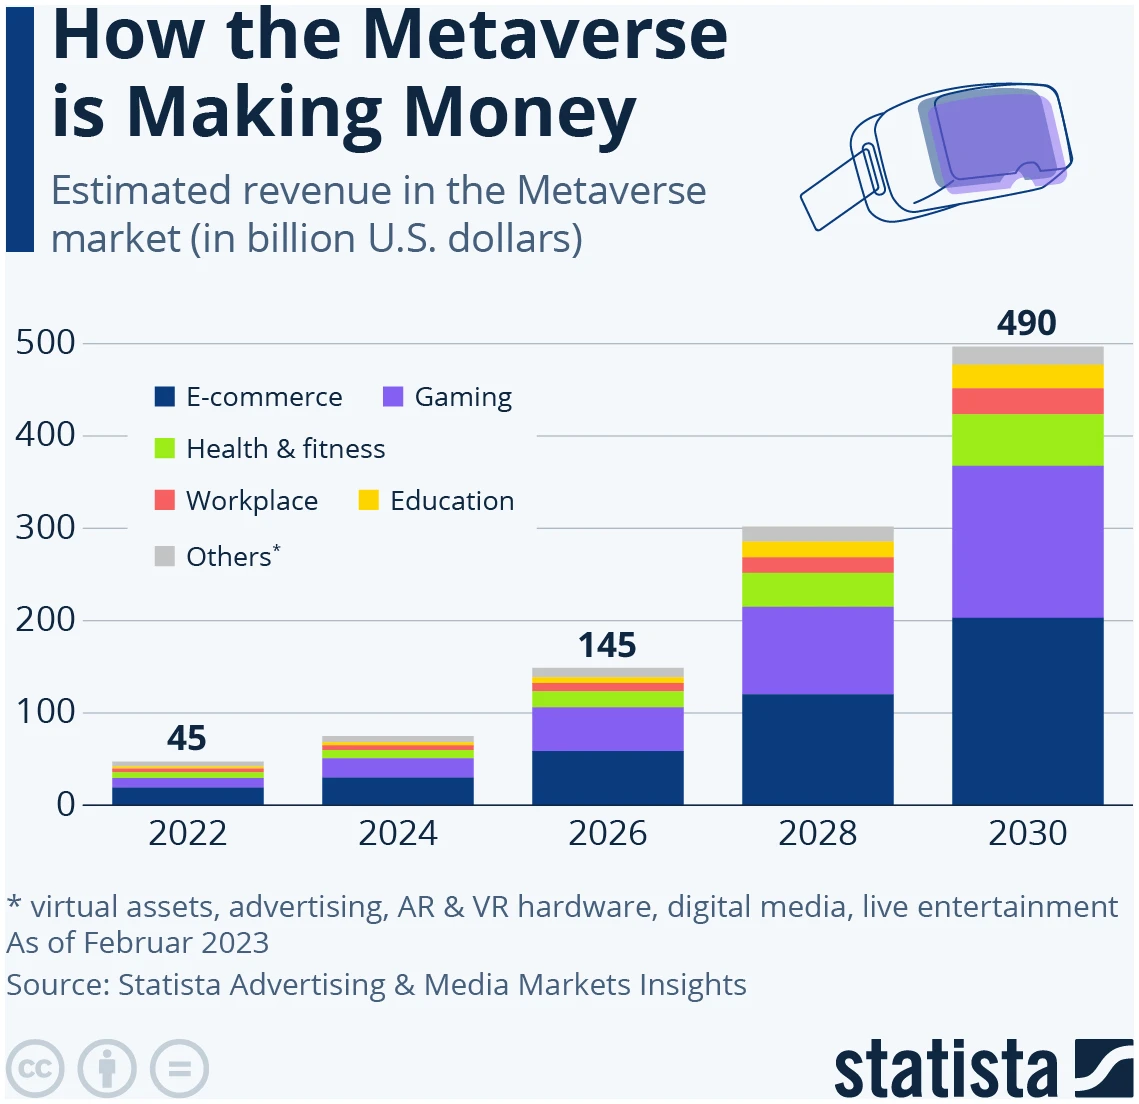 vzostup metaverza - trh metaverzum má rásť a do konca dekády dosiahnuť 490 miliárd USD